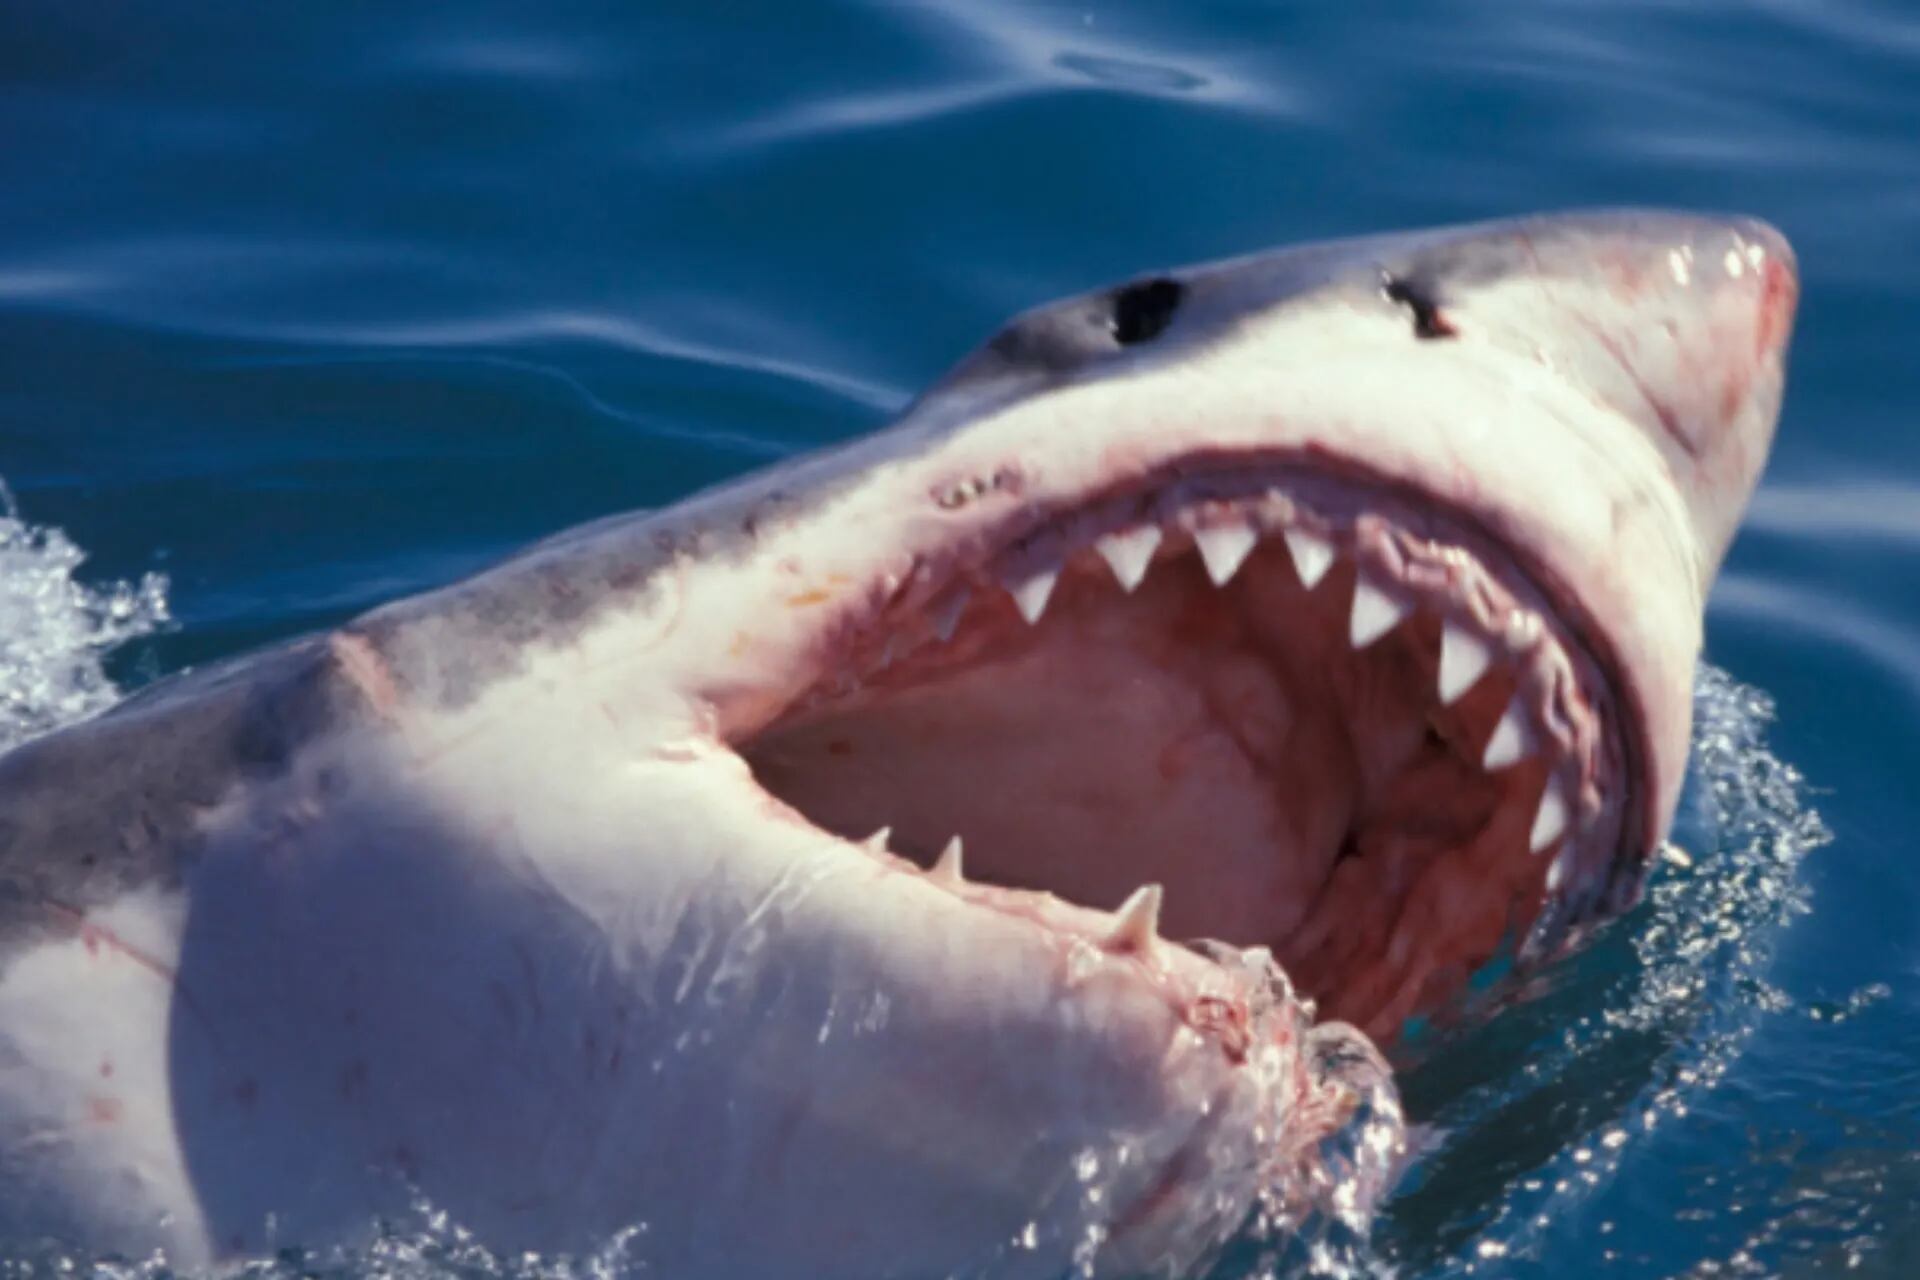 Abundancia Exclusión Arado La experiencia extrema de nadar con tiburones adentro de jaulas - LA NACION